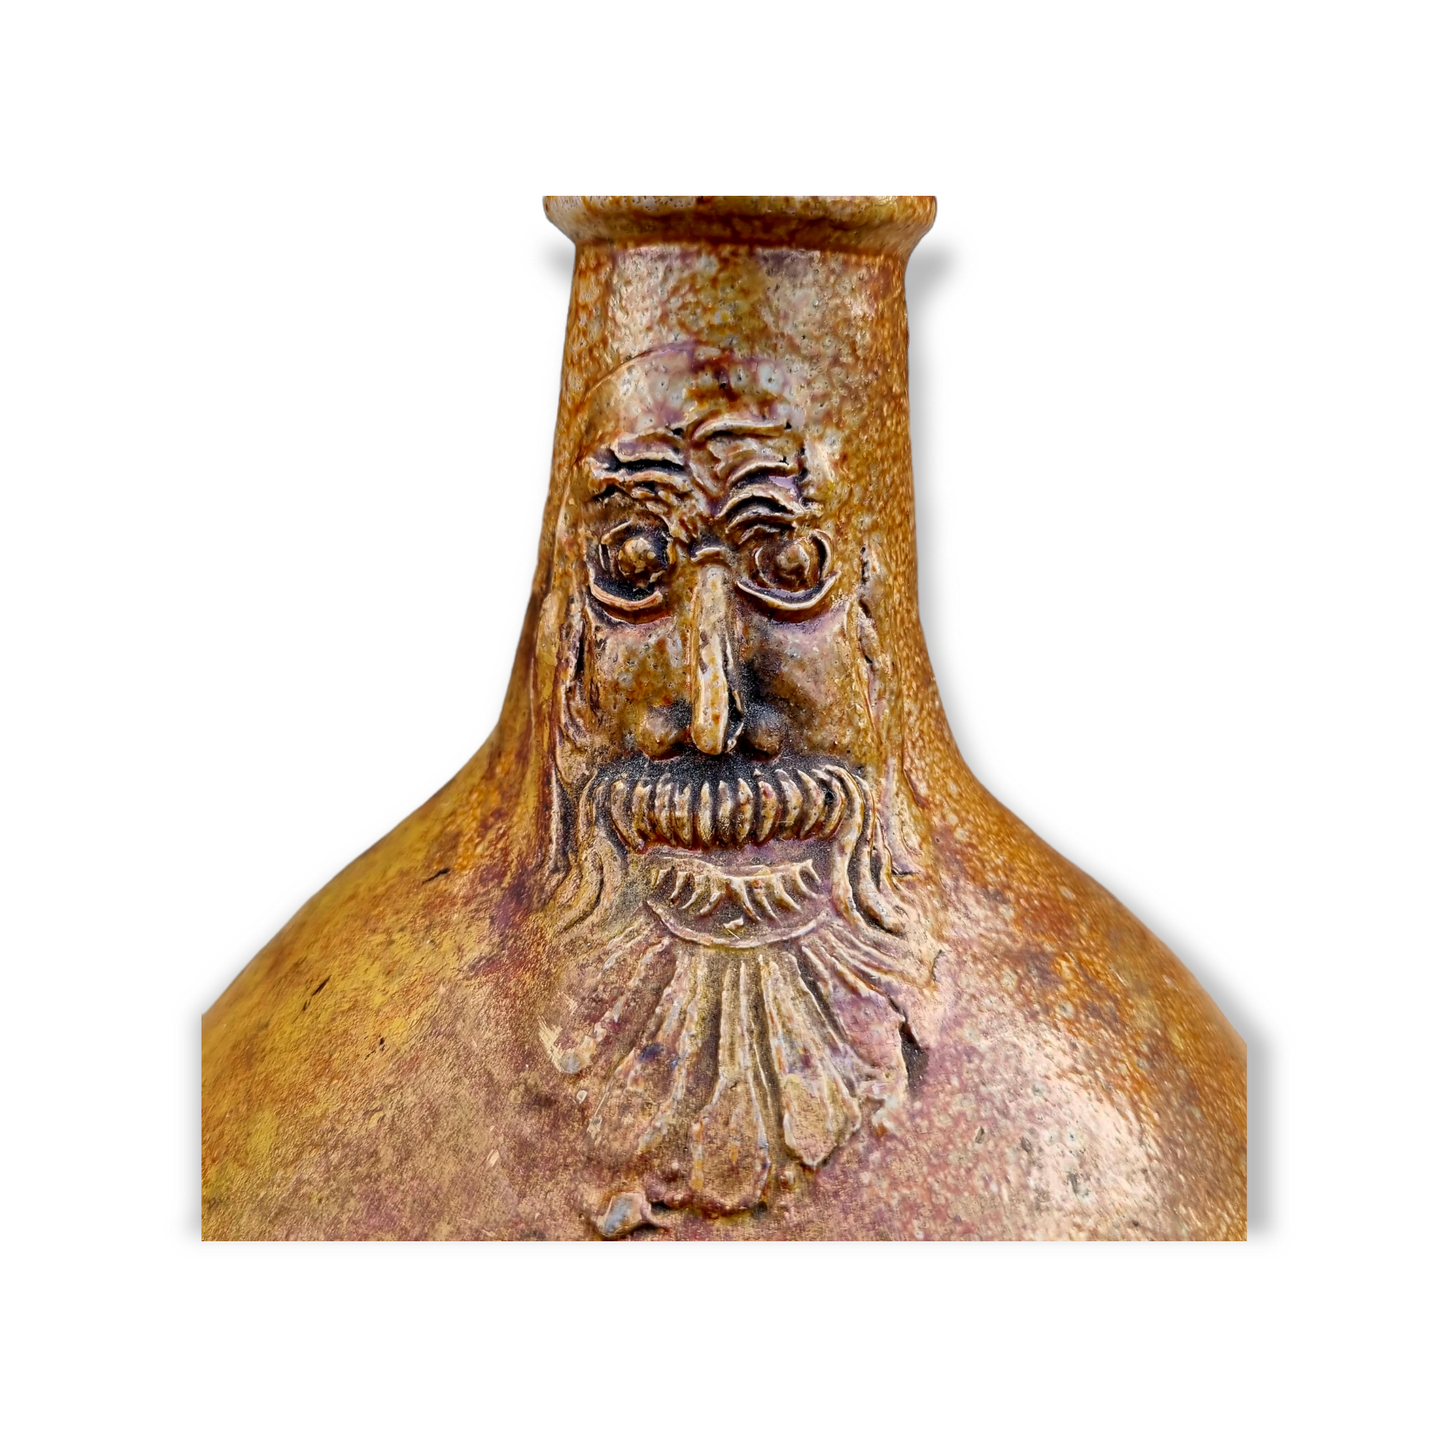 Mid 17th Century Antique Stoneware "Witch Bottle" Excavated in Norfolk / Bellarmine Jug / Bartmannkrug, Circa 1650